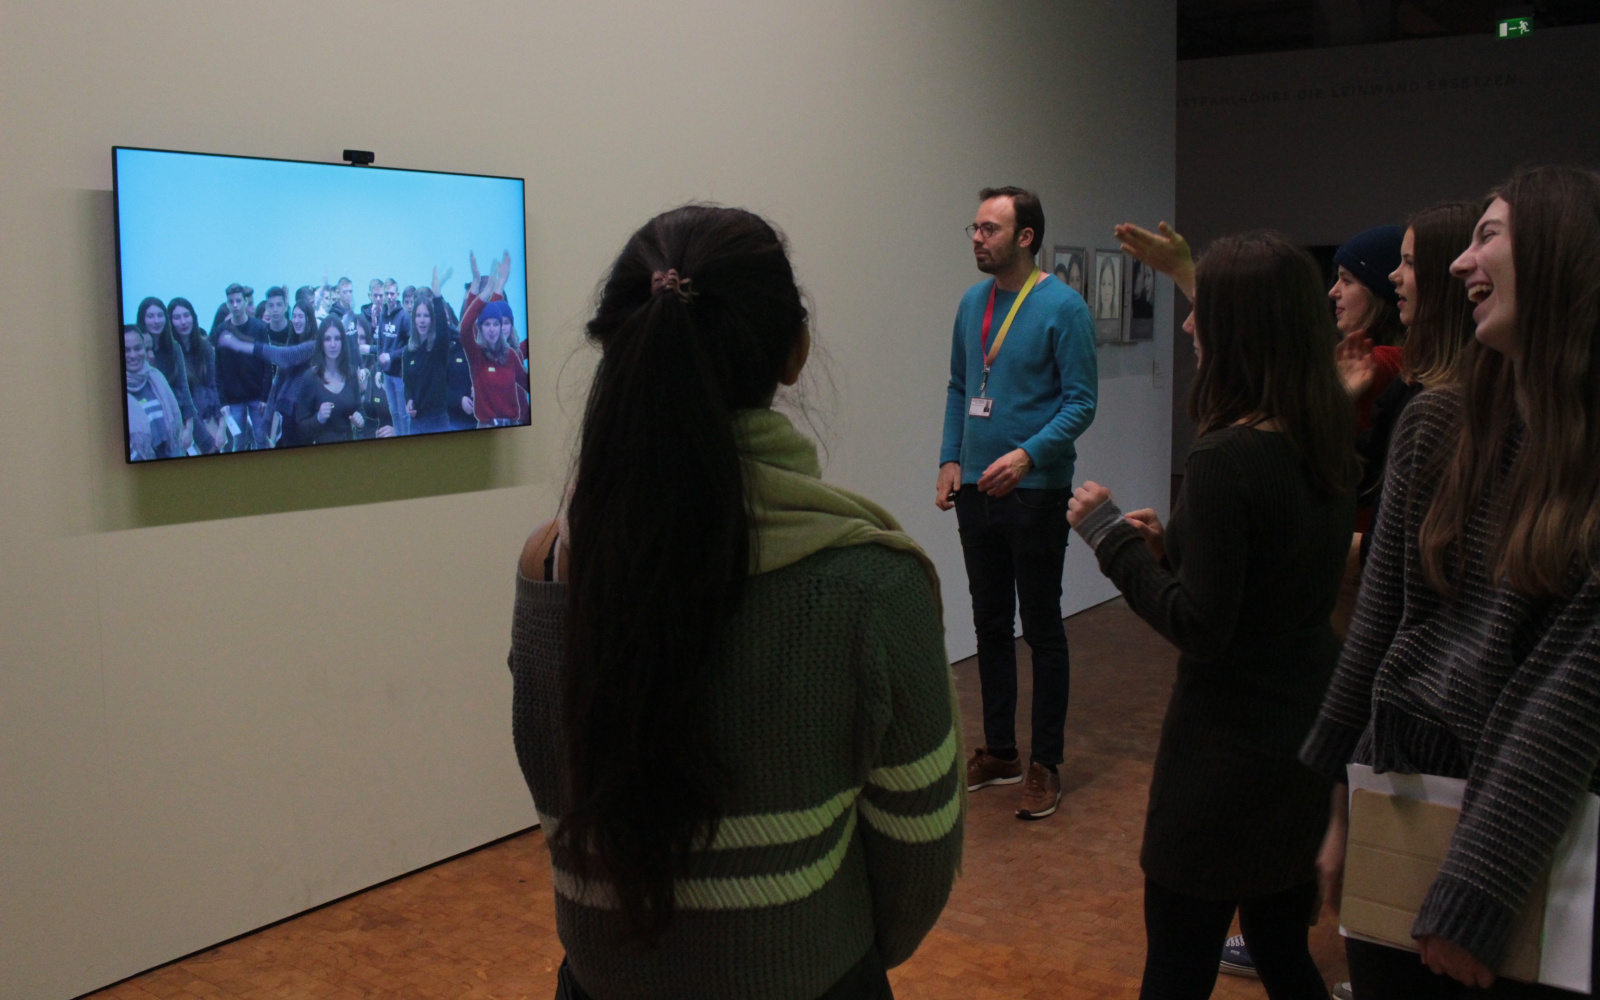 Zu sehen ist eine Gruppe an jungen Menschen, die vor einem Bildschirm stehen. Auf dem Bildschirm ist ein Live-Bild von der Gruppe zu sehen, das von einer Kamera über dem Bildschirm aufgenommen wird.